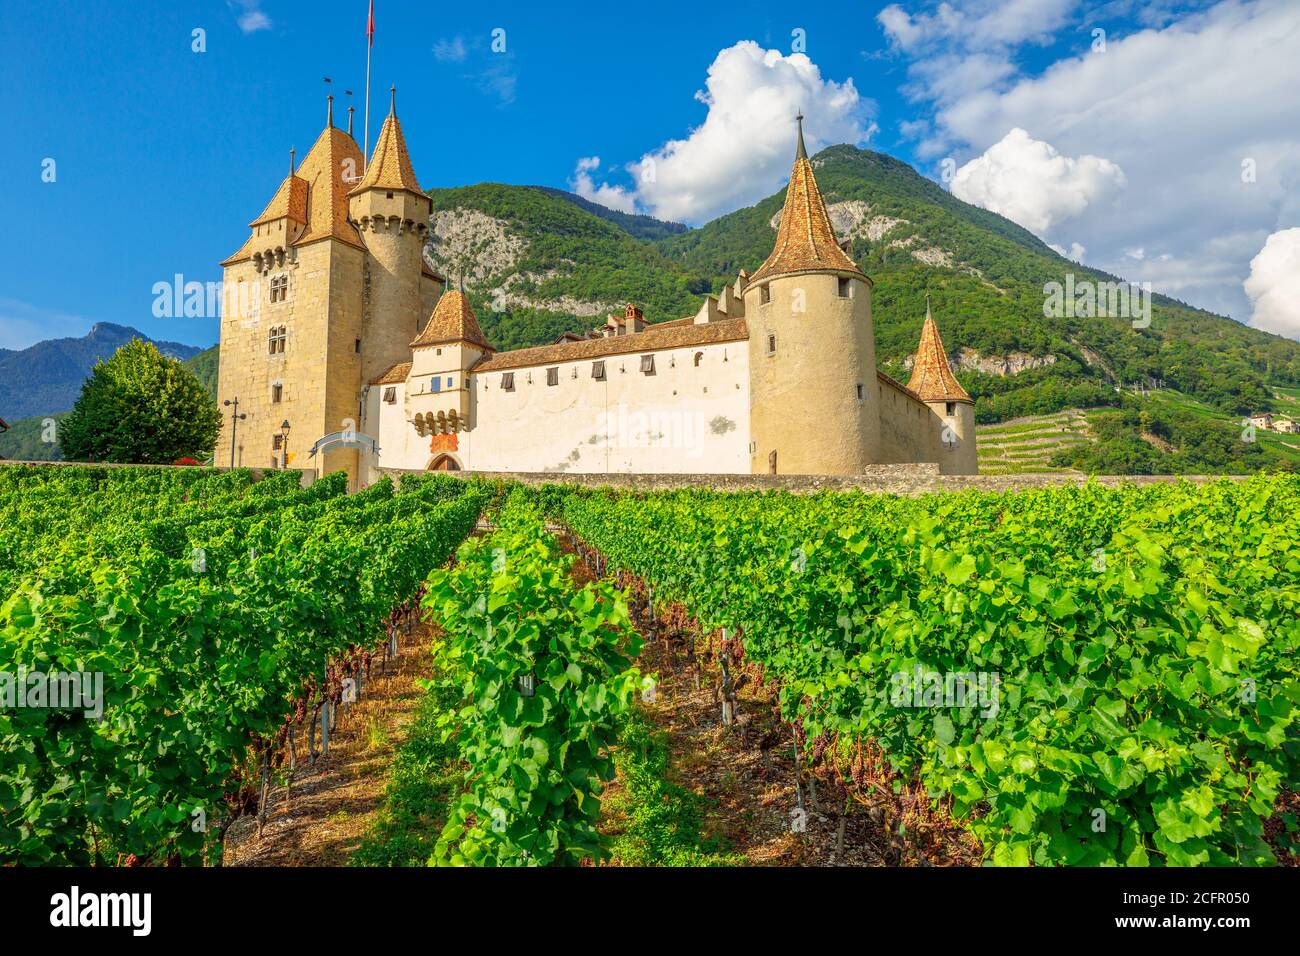 Château d'Aigle dans le canton de Vaud, Suisse. Le château d'Aigle surplombe les vignobles en terrasse environnants et les Alpes suisses. Rangées de vignes en croissance pendant Banque D'Images